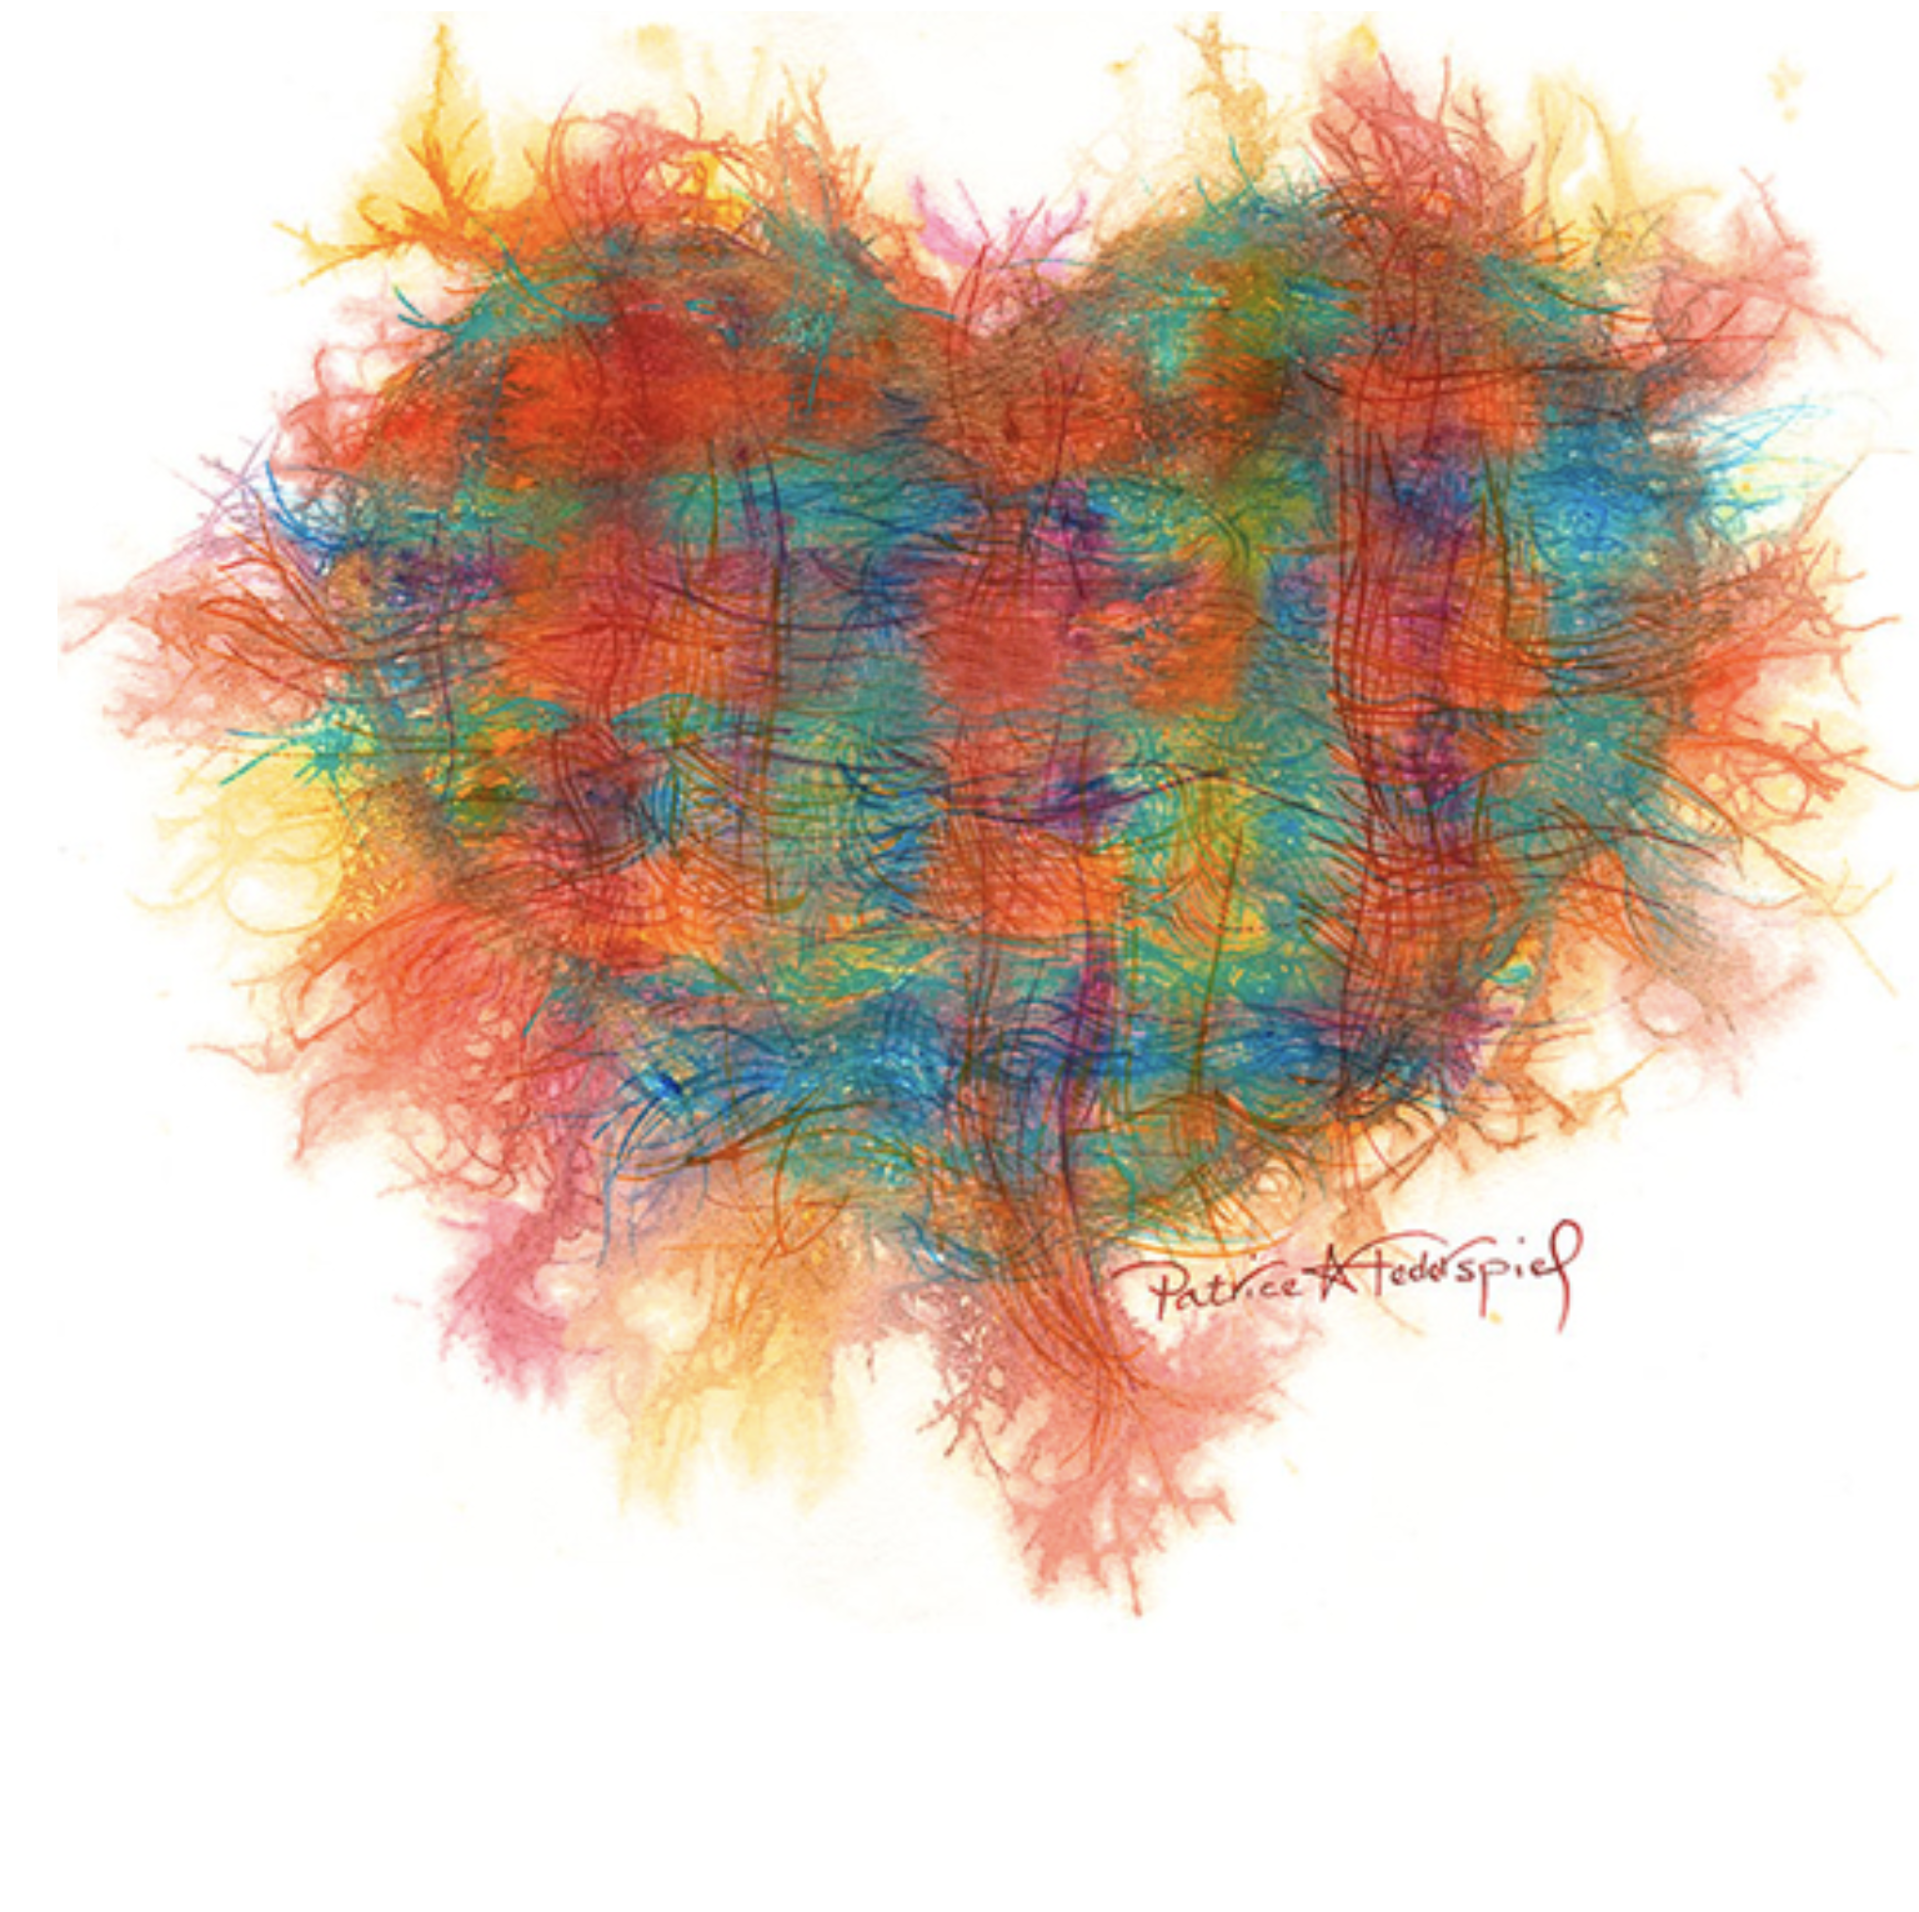 Heart Strings by Patrice Ann Federspiel